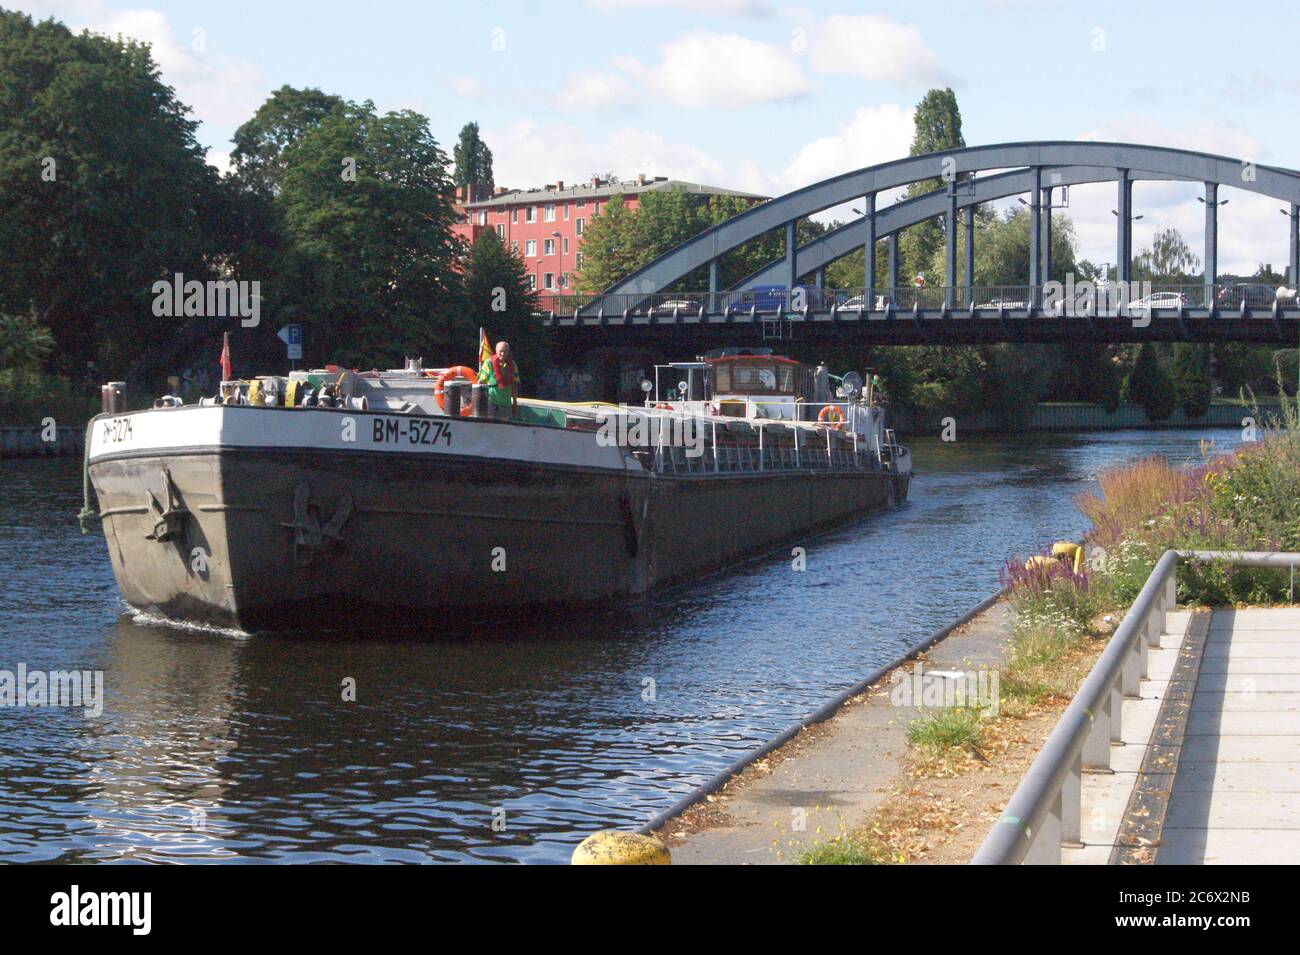 Das 1967 in der polnischen Werft 'Plocka Stocznia Rzeczna' gebaute Frachtschiff BM 5274 am Lindenufer am Fluss Havel in Berlin-Spandau. Foto de stock